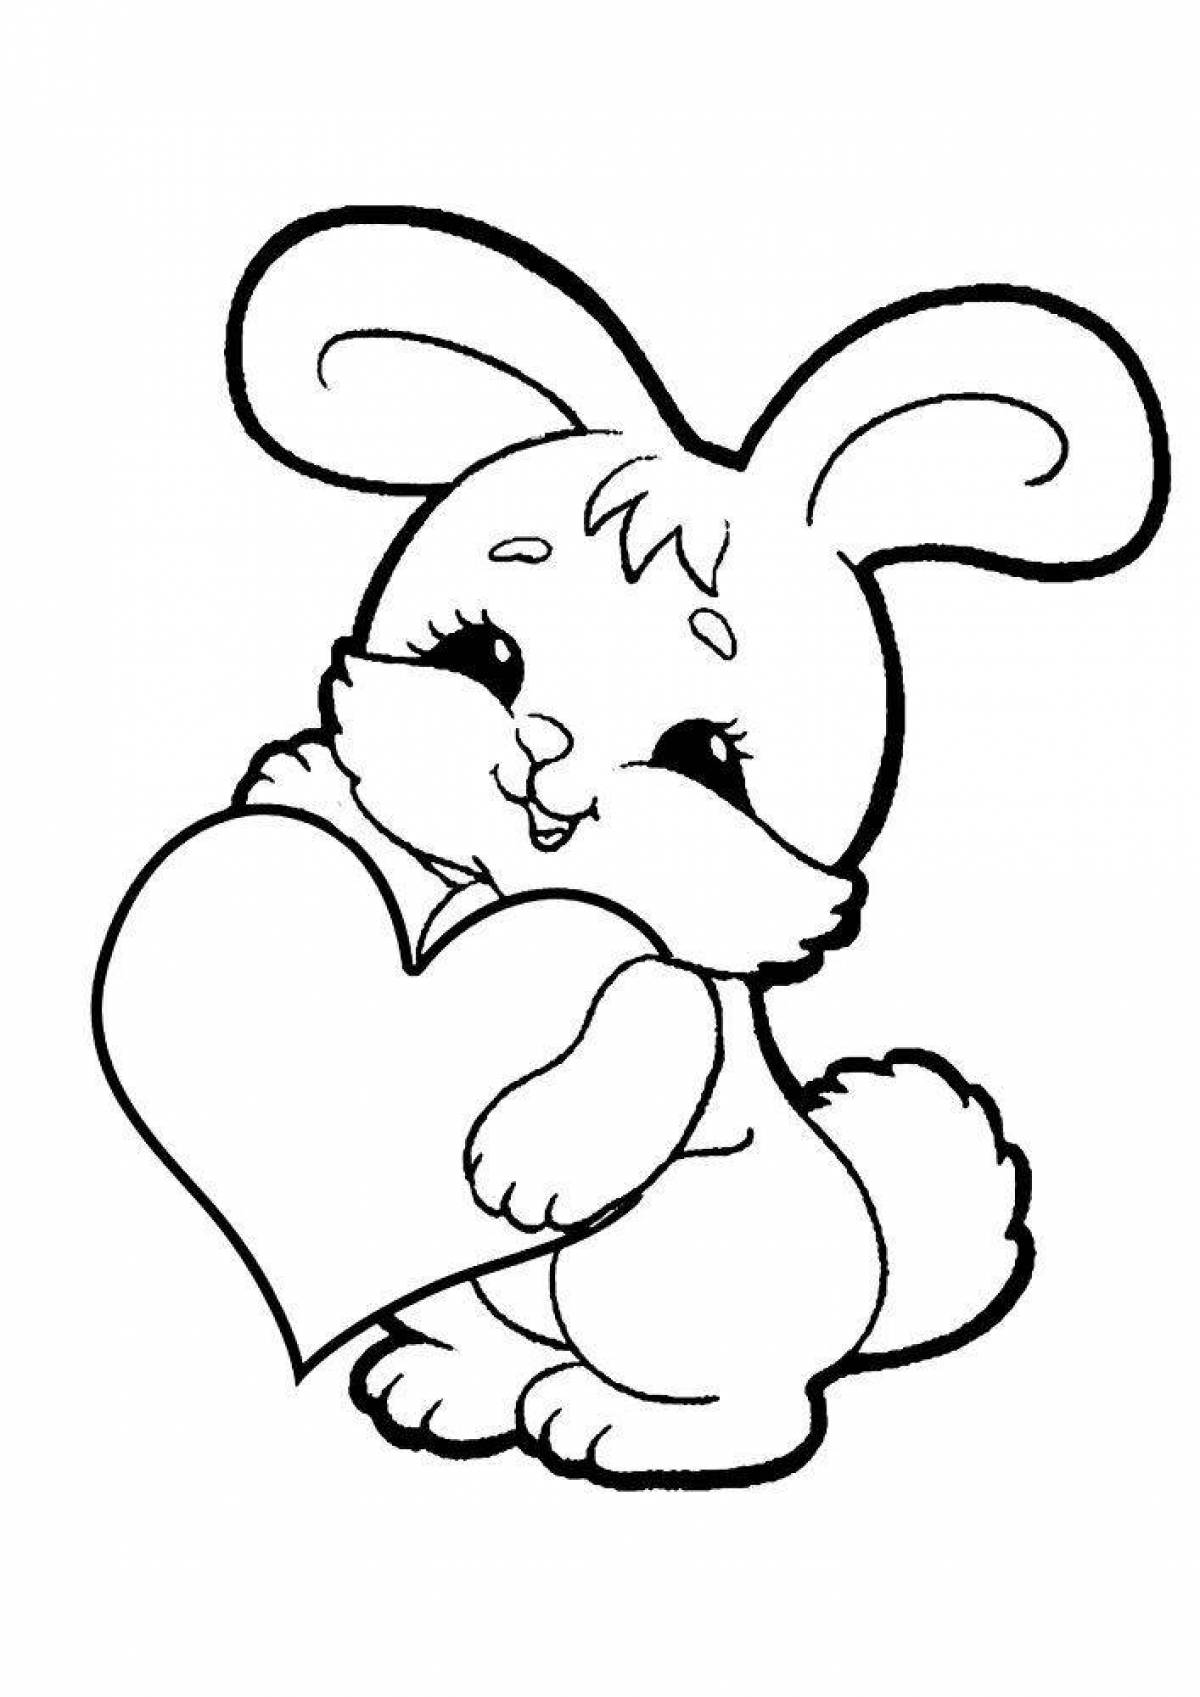 Рисунки для срисовки на лист а4. Раскраска зайчик. Раскраска зайчик с сердечком. Зайка раскраска для детей. Зайчик раскраска для малышей.